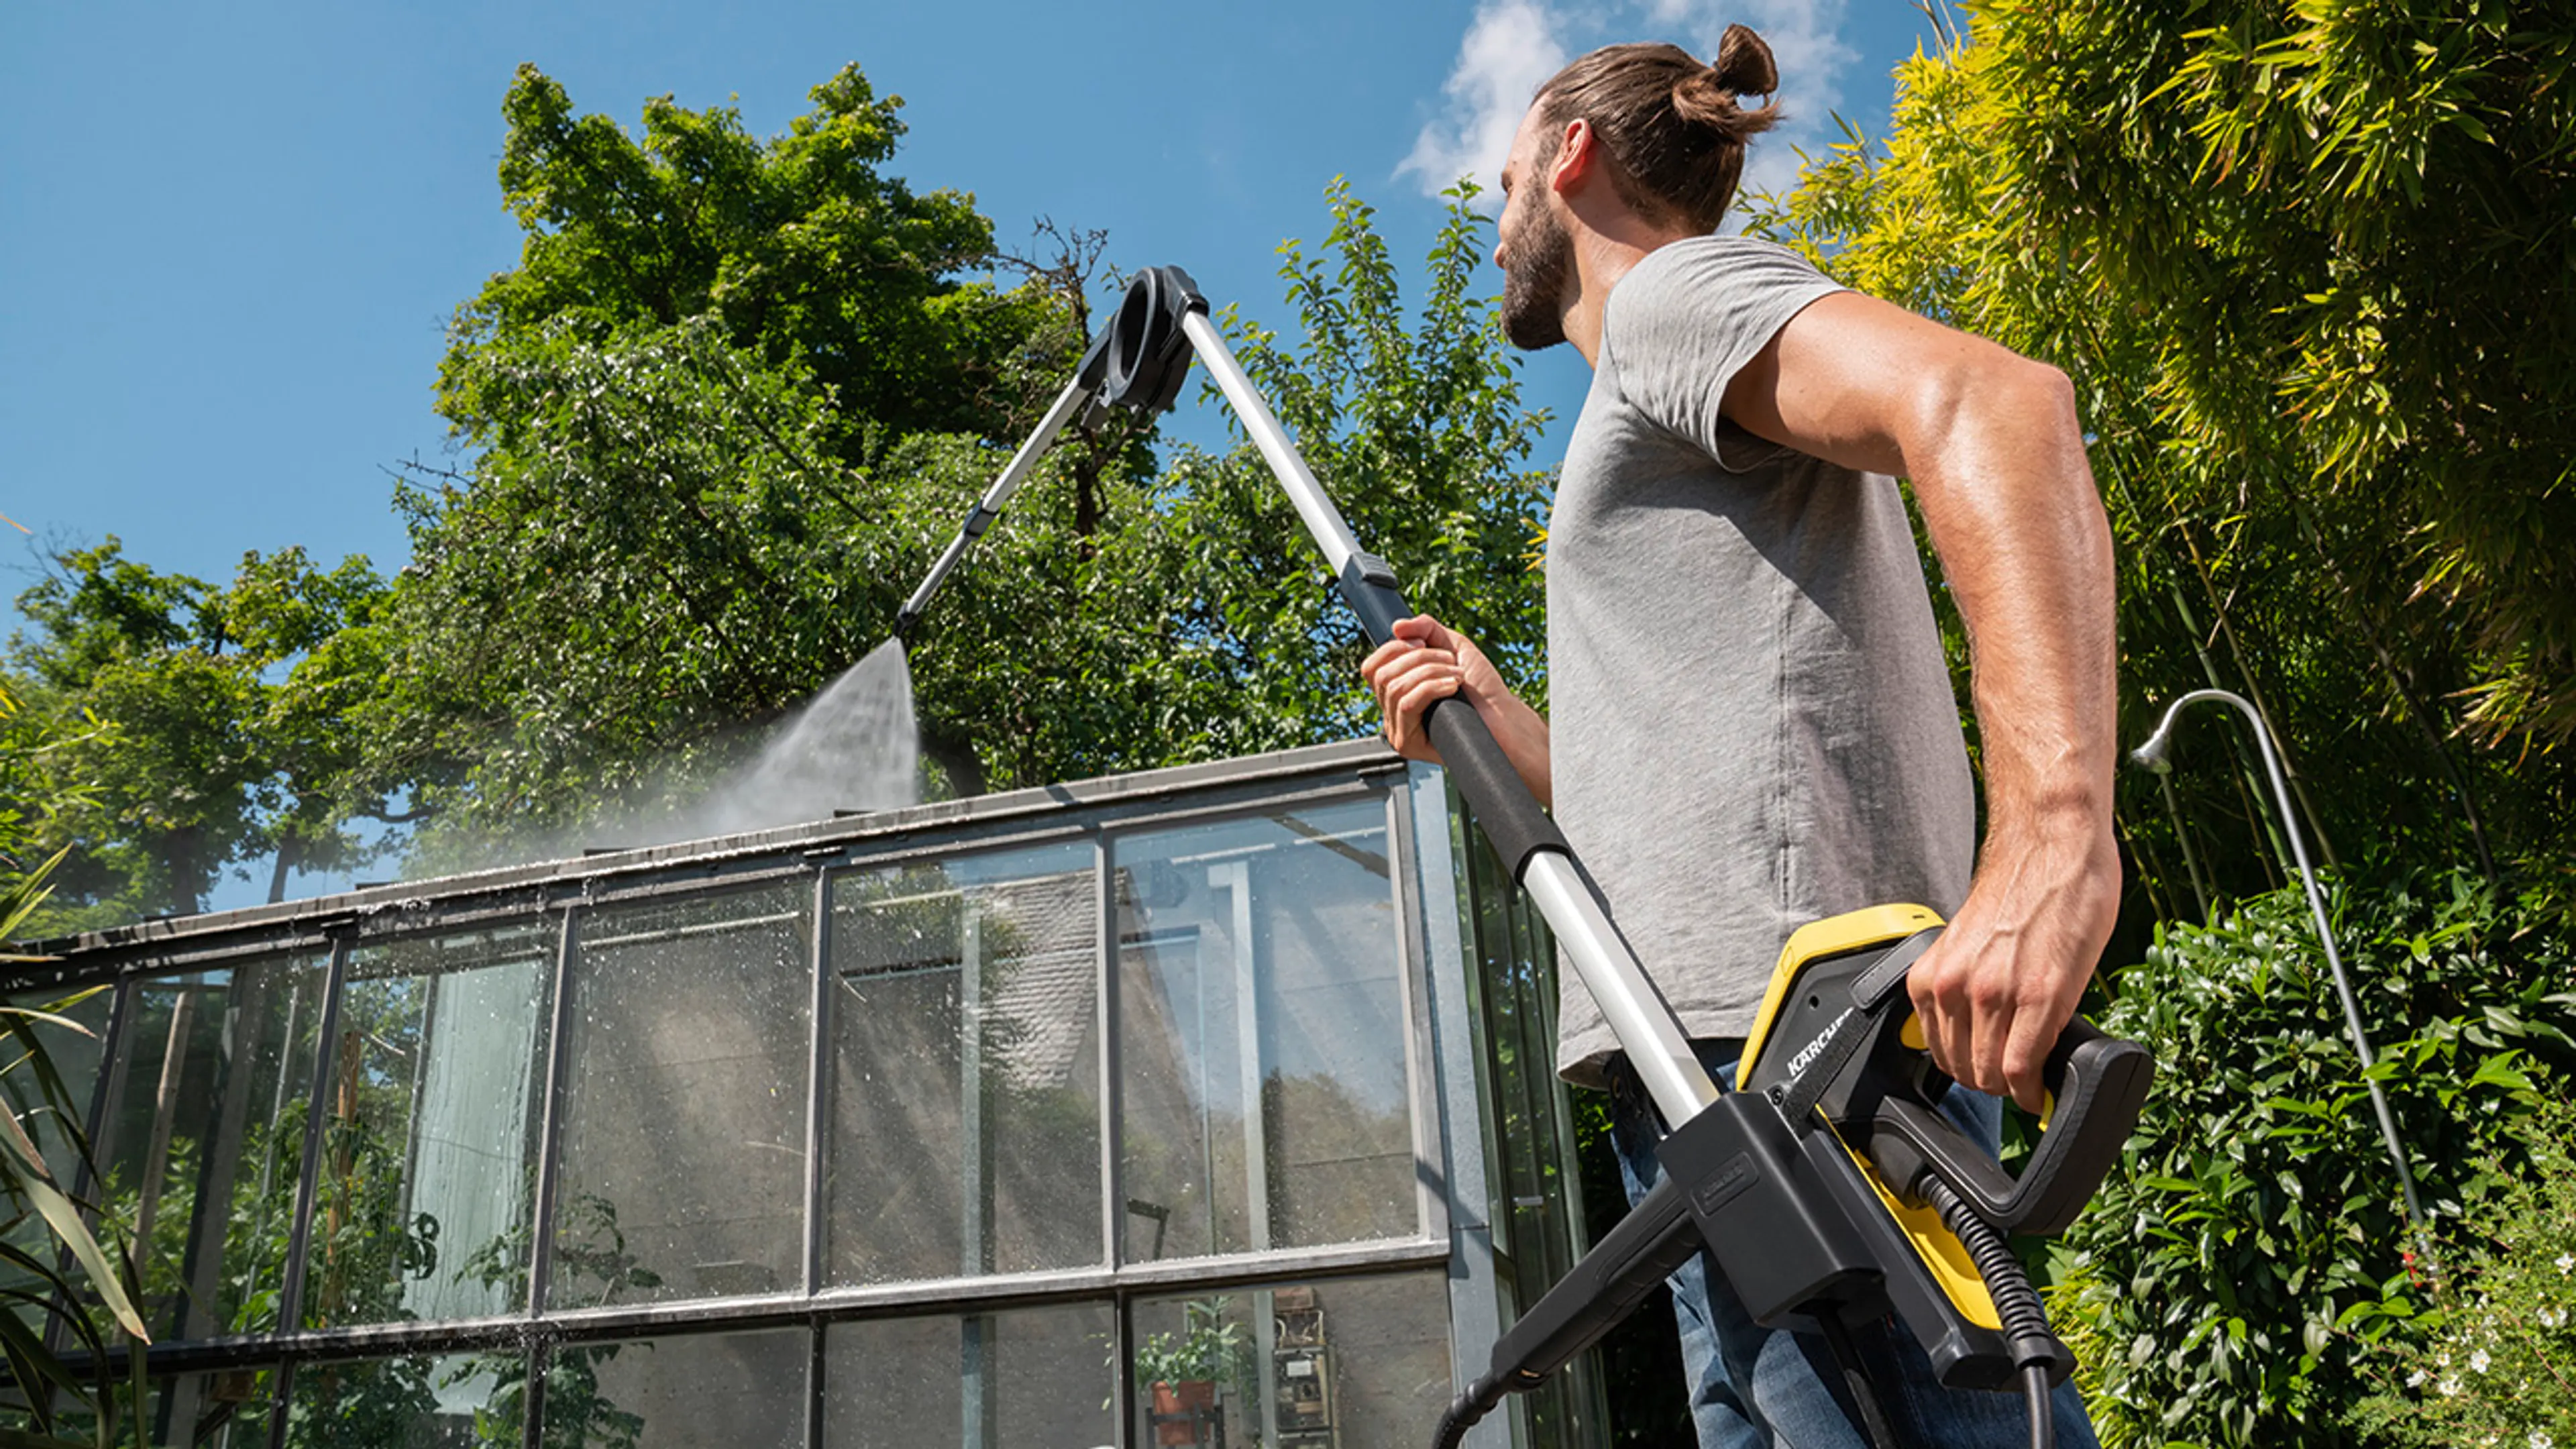 Mann som viser hvordan vaske vinduer ute på drivhus med høytrykkspyler.